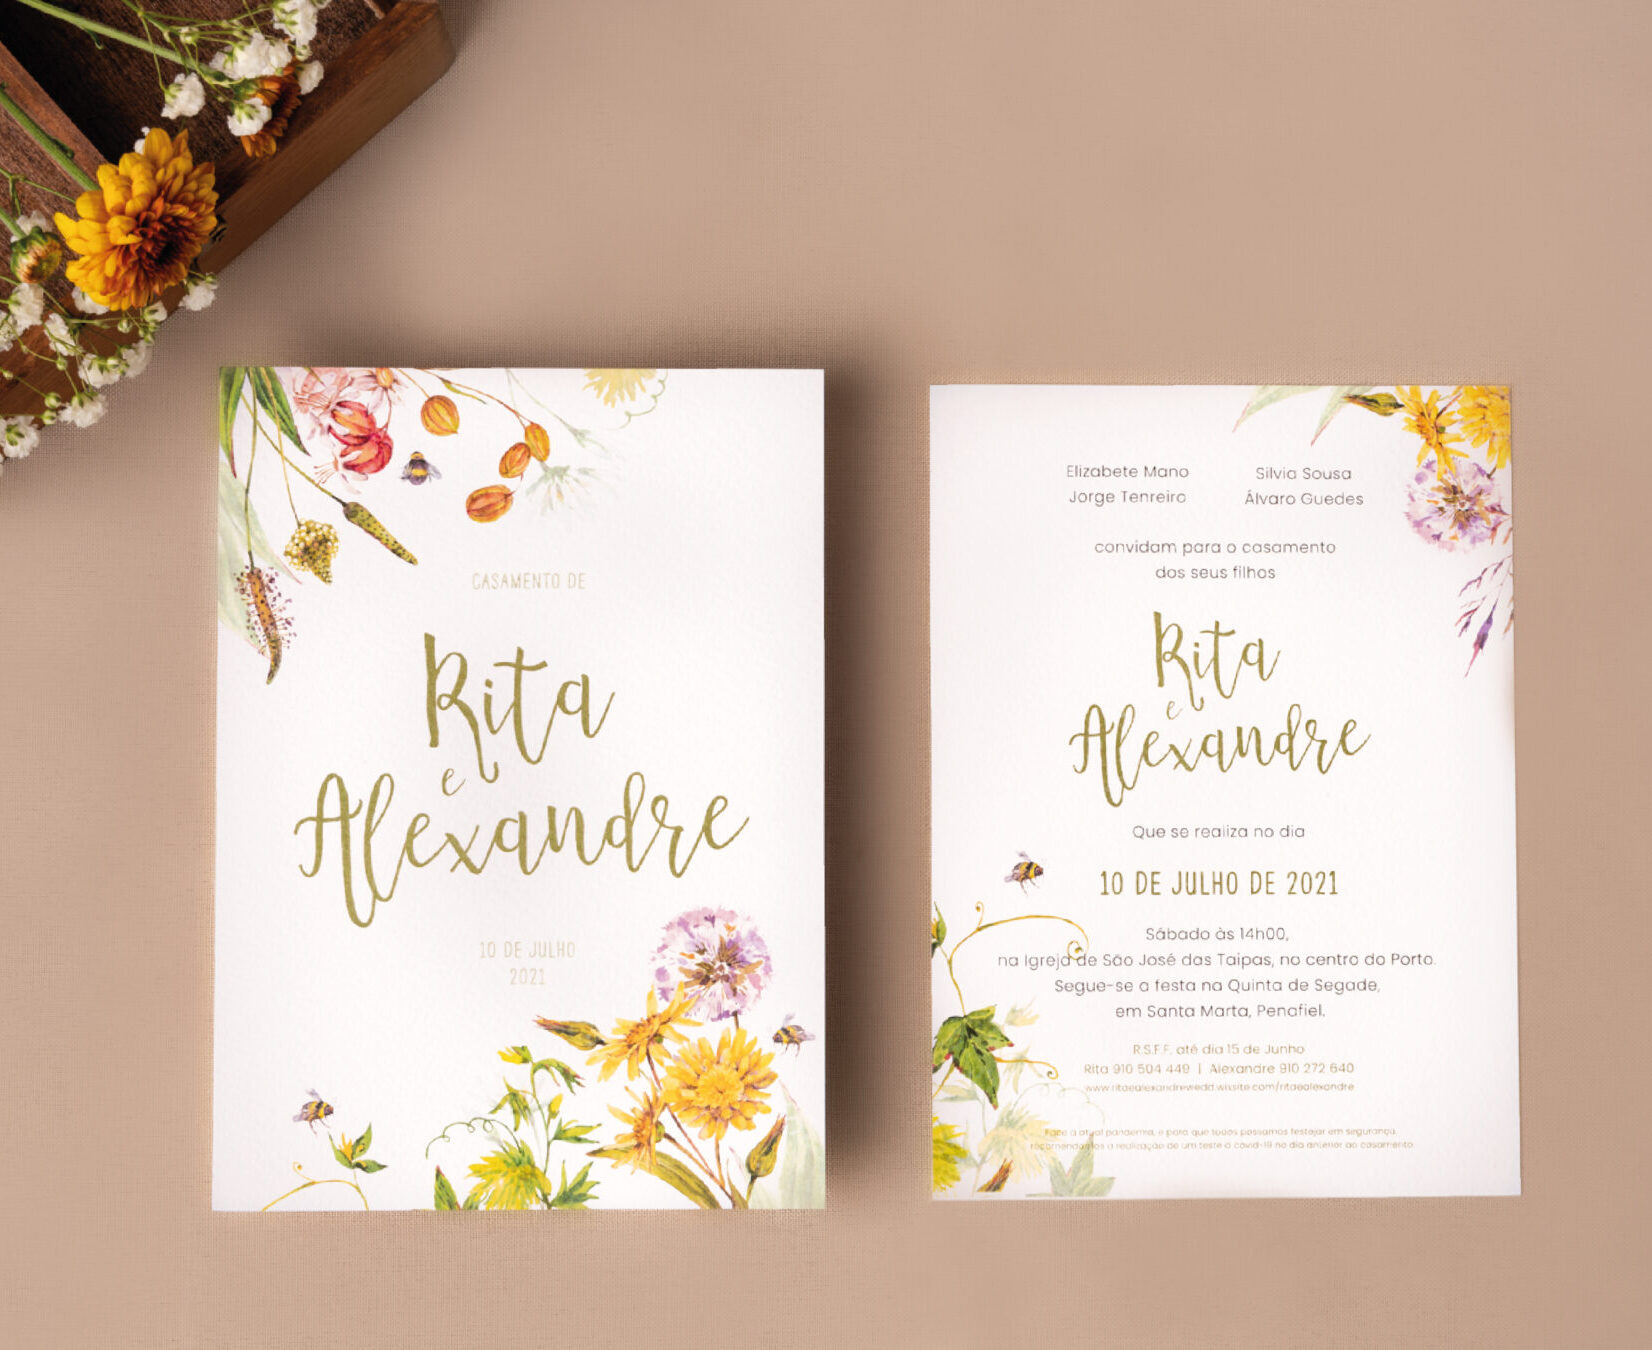 Convite de casamento com detalhes florais inspirado na costa amalfitana e detalhes em dourado